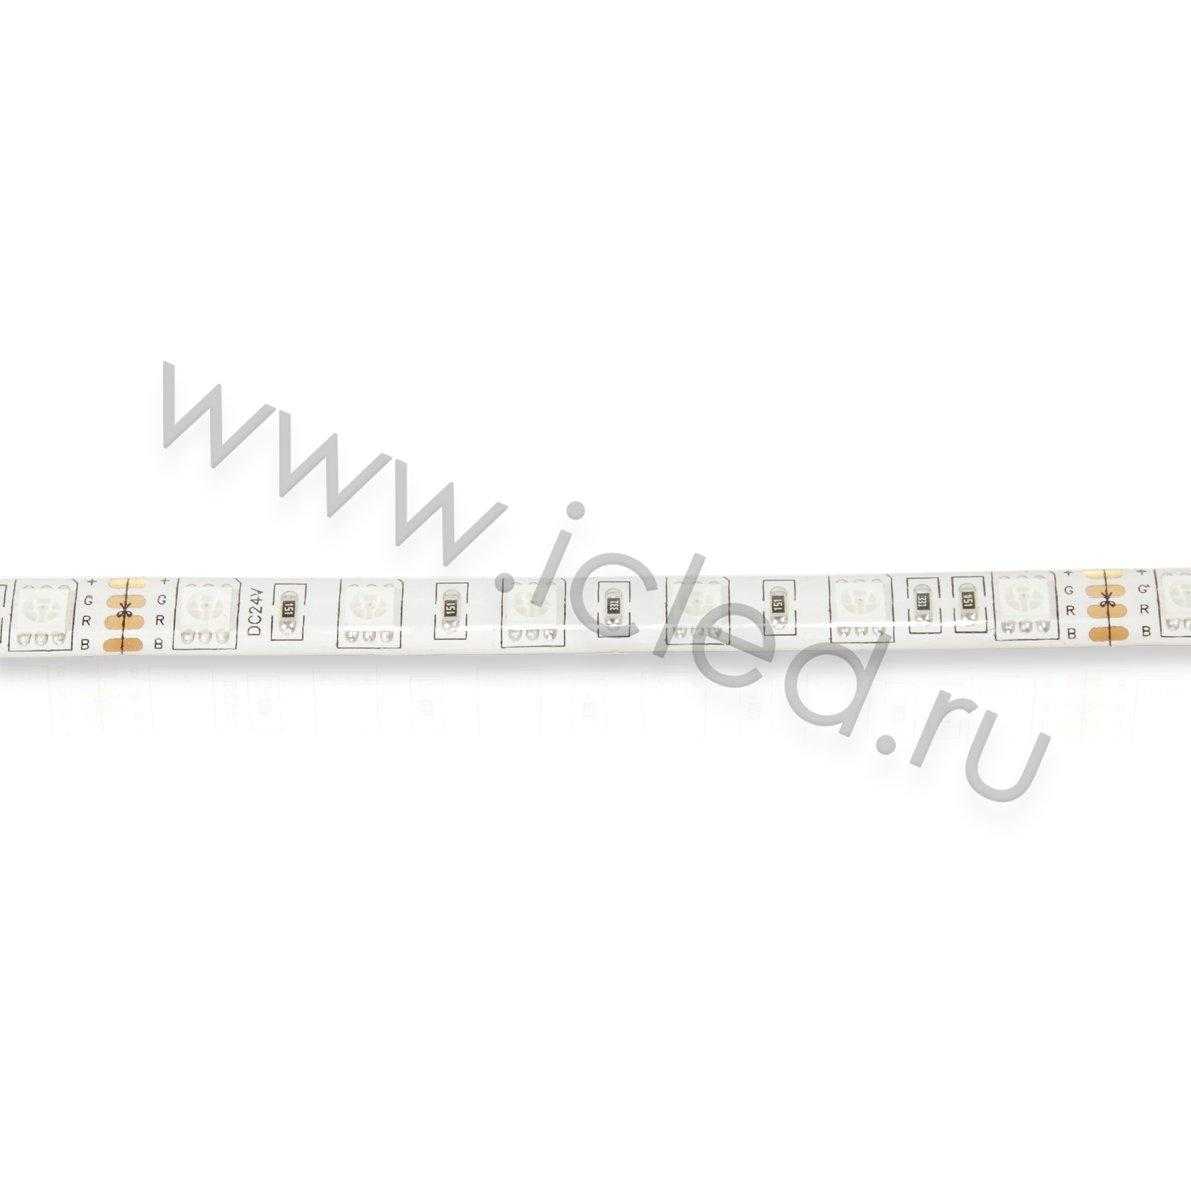 Влагозащищенные светодиодные ленты Светодиодная лента Standart PRO class, 5050, 60 led/m, RGB, 24V, P79, IP65 Icled